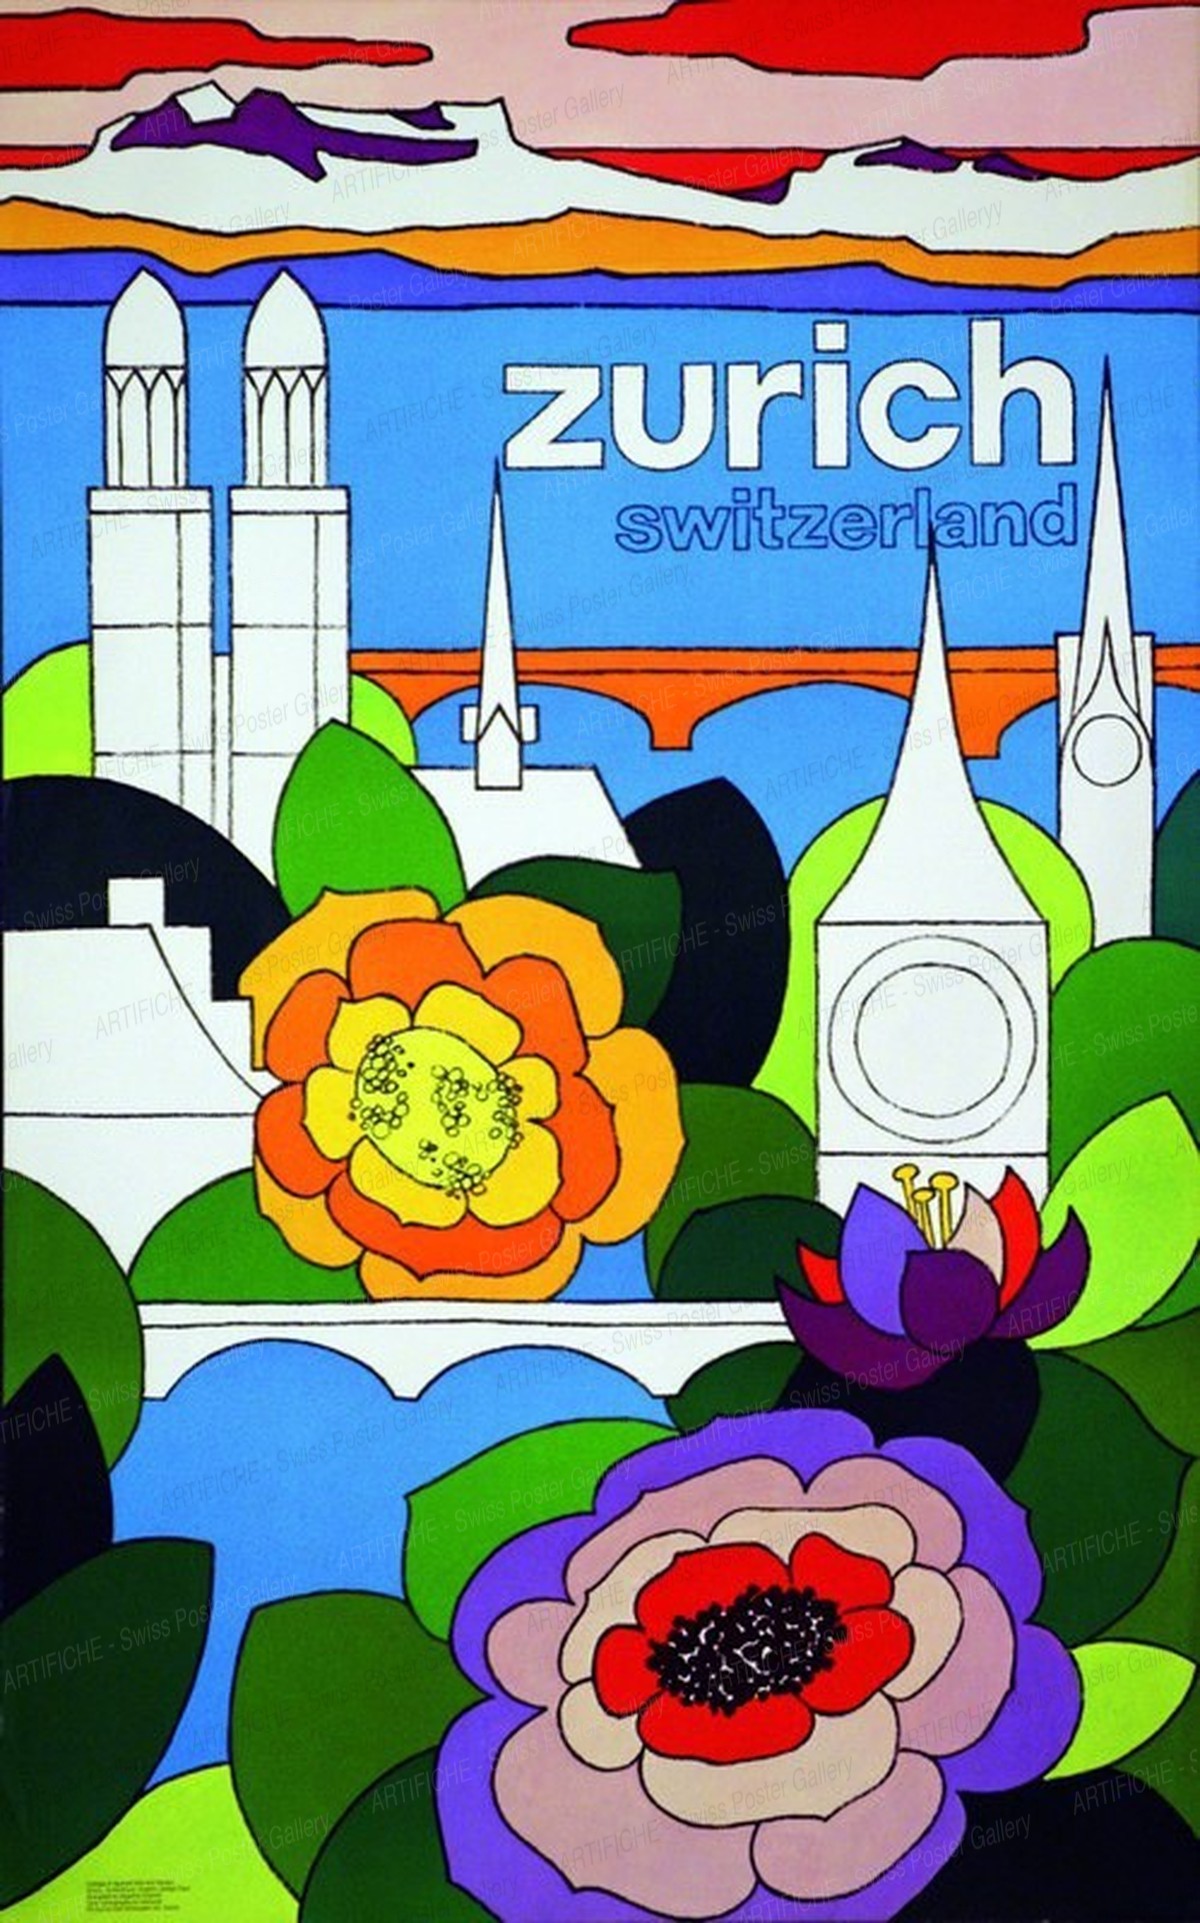 Zurich City – Switzerland, Angelica Grazioli